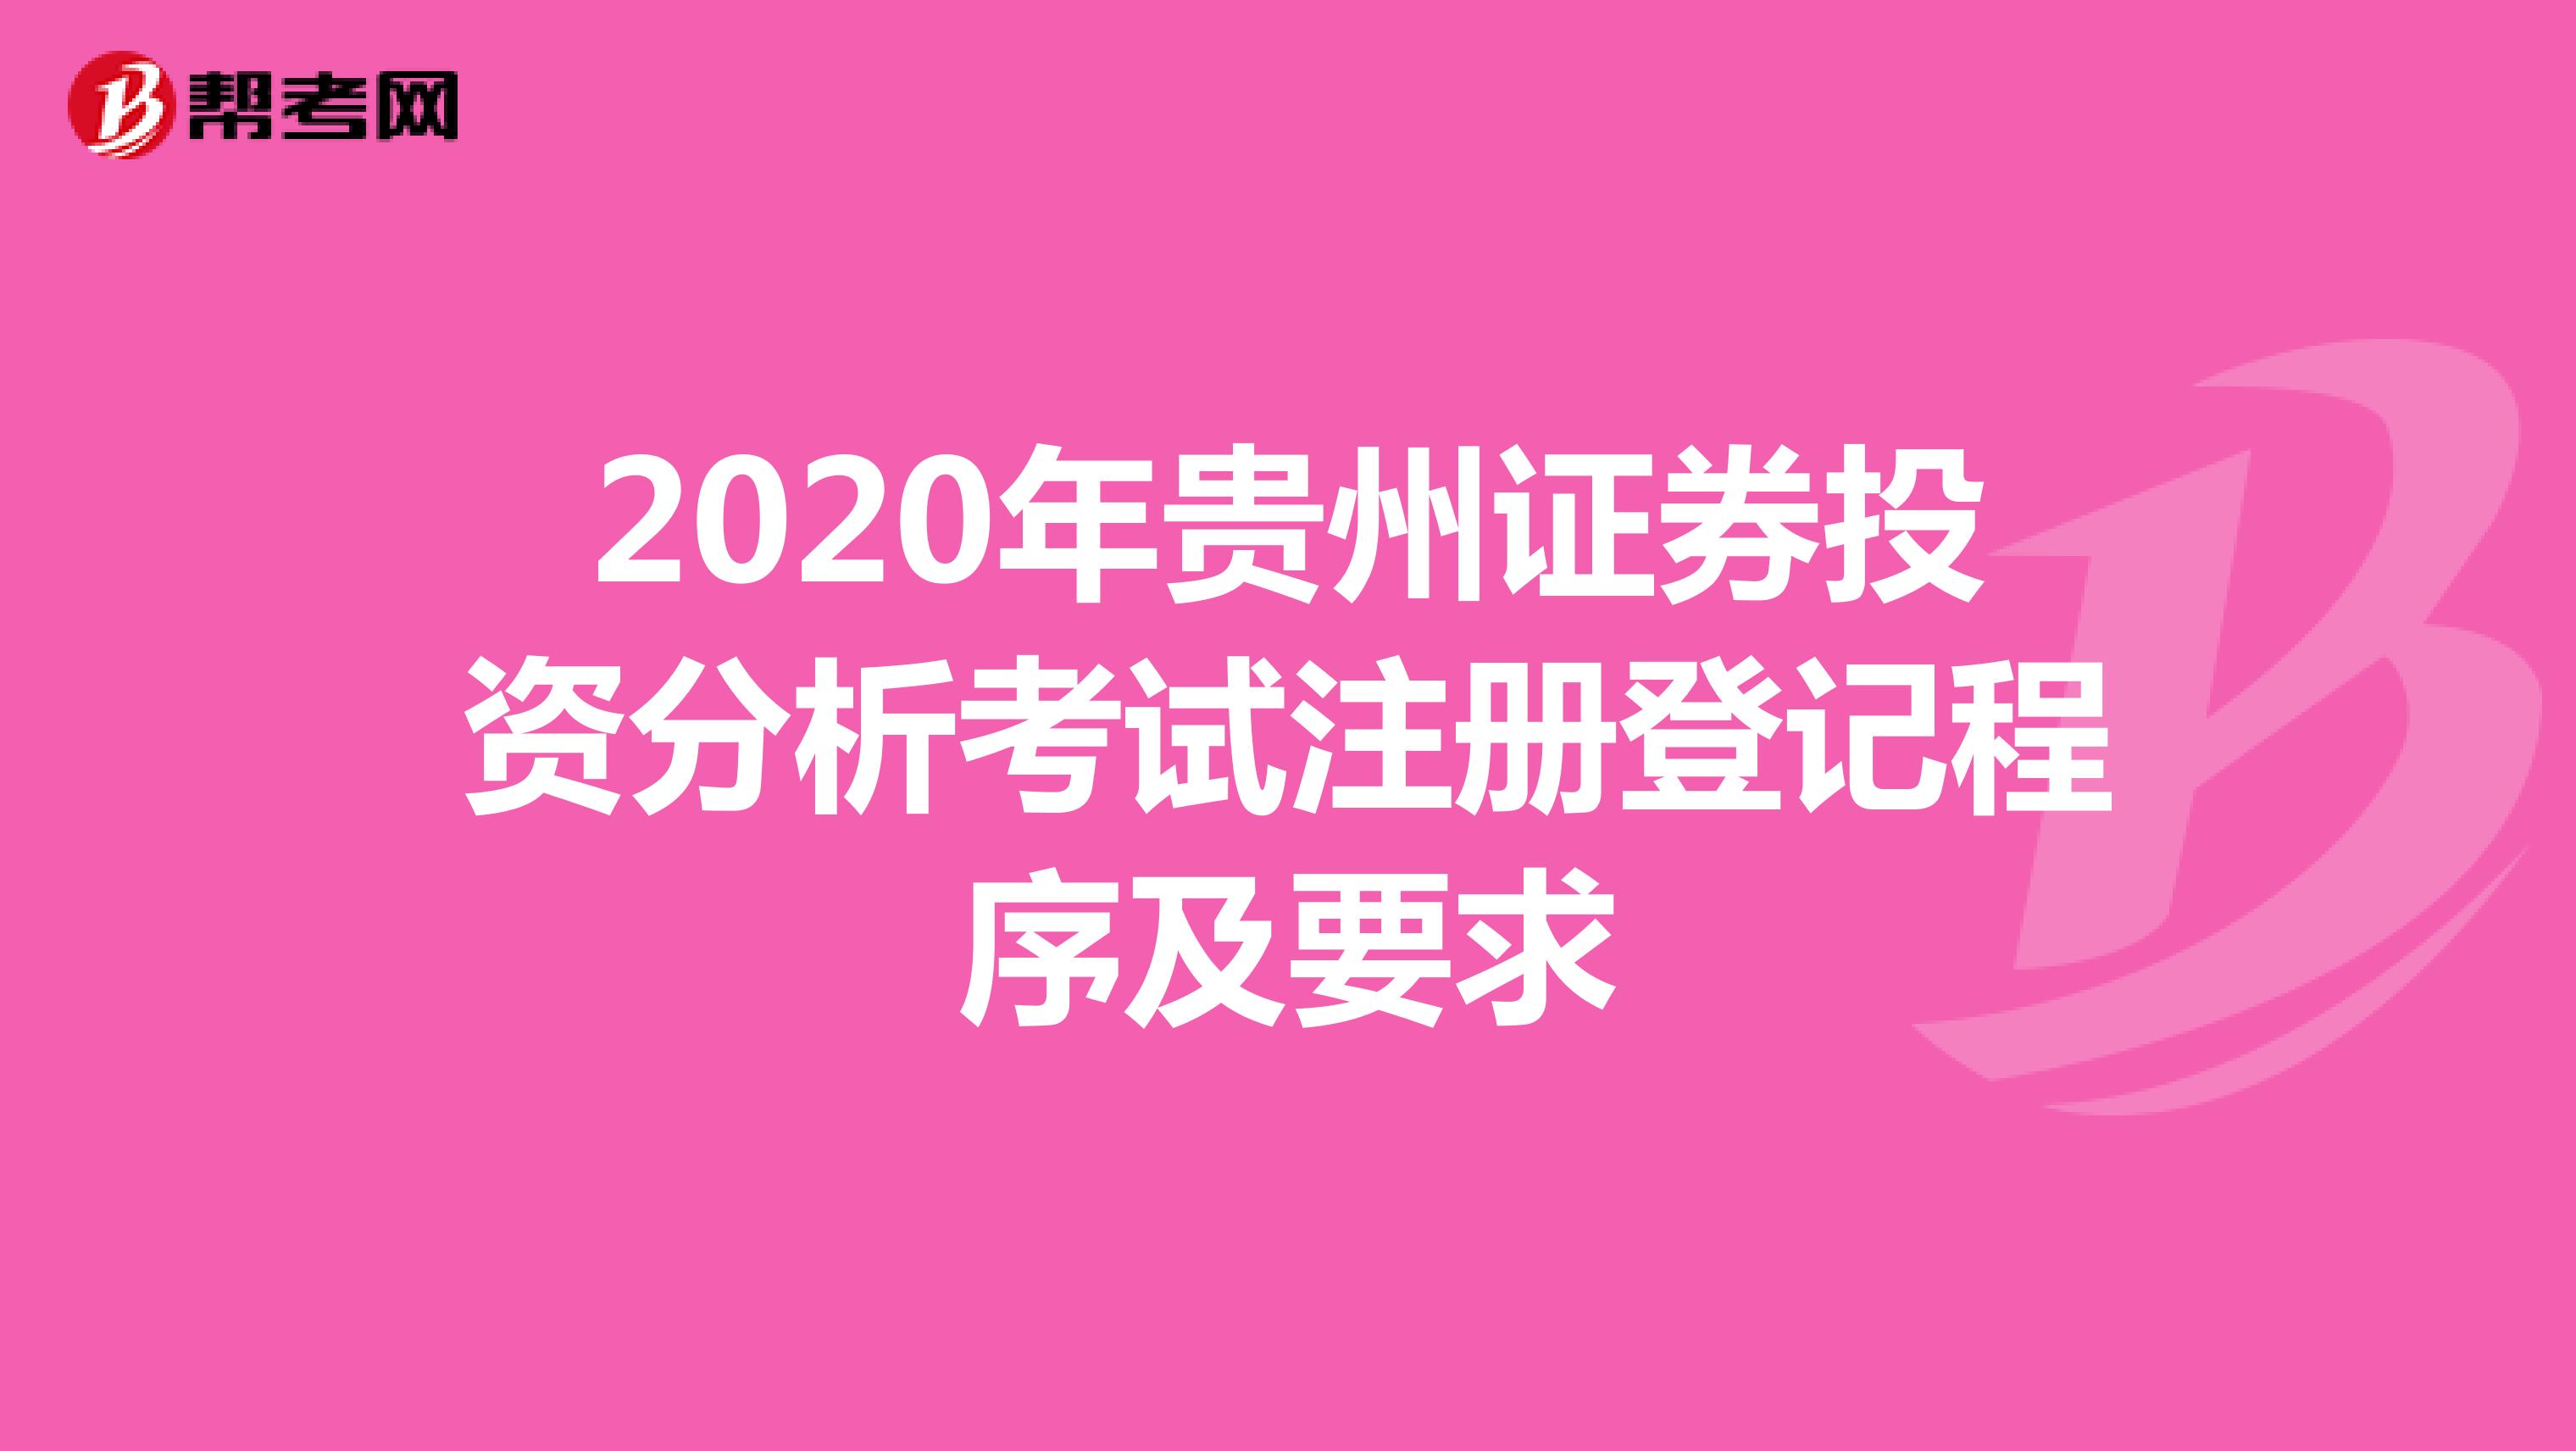 2020年贵州证券投资分析考试注册登记程序及要求